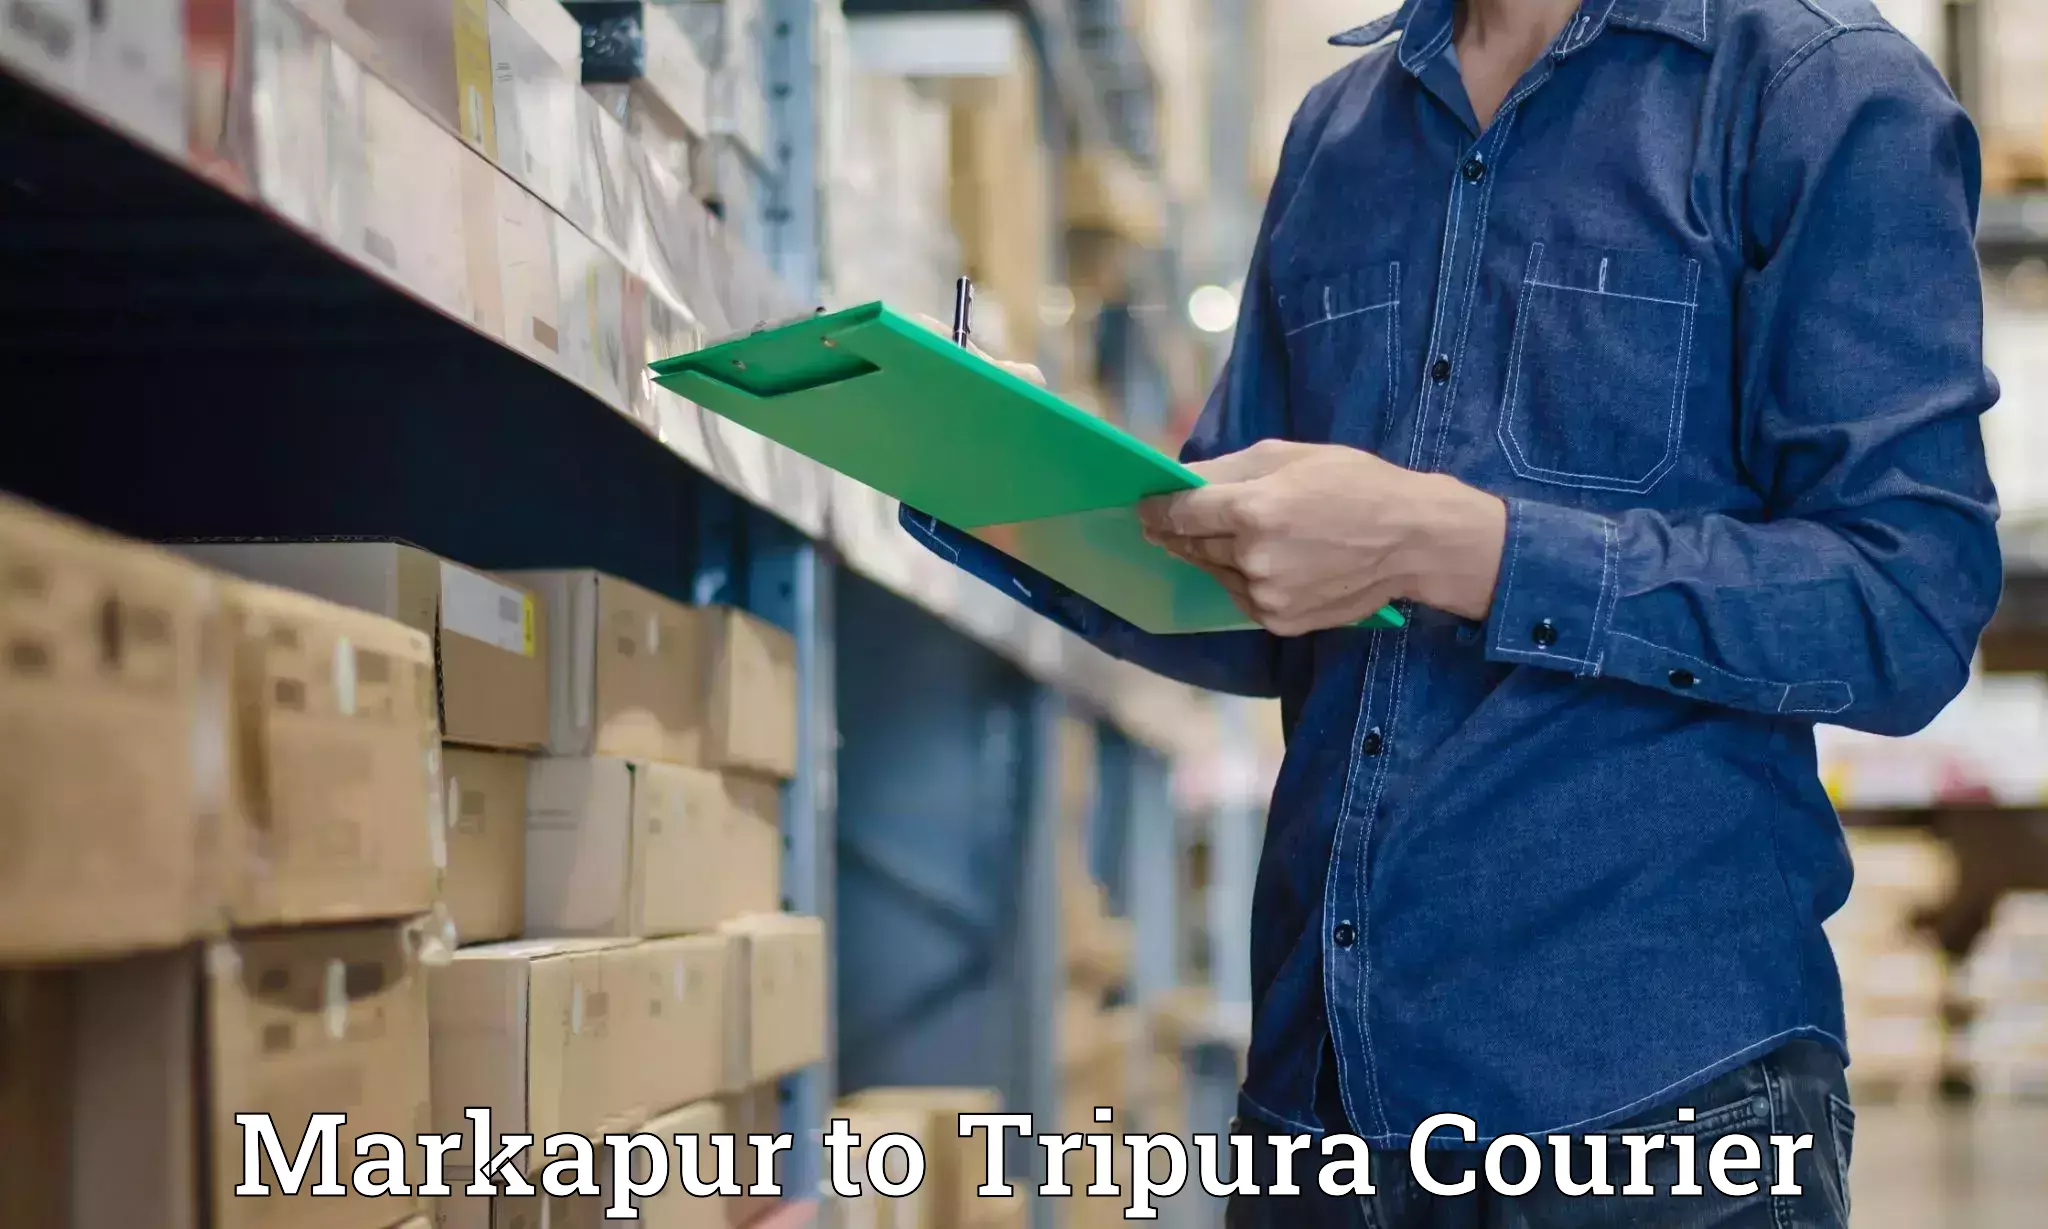 Courier service comparison Markapur to Dhalai